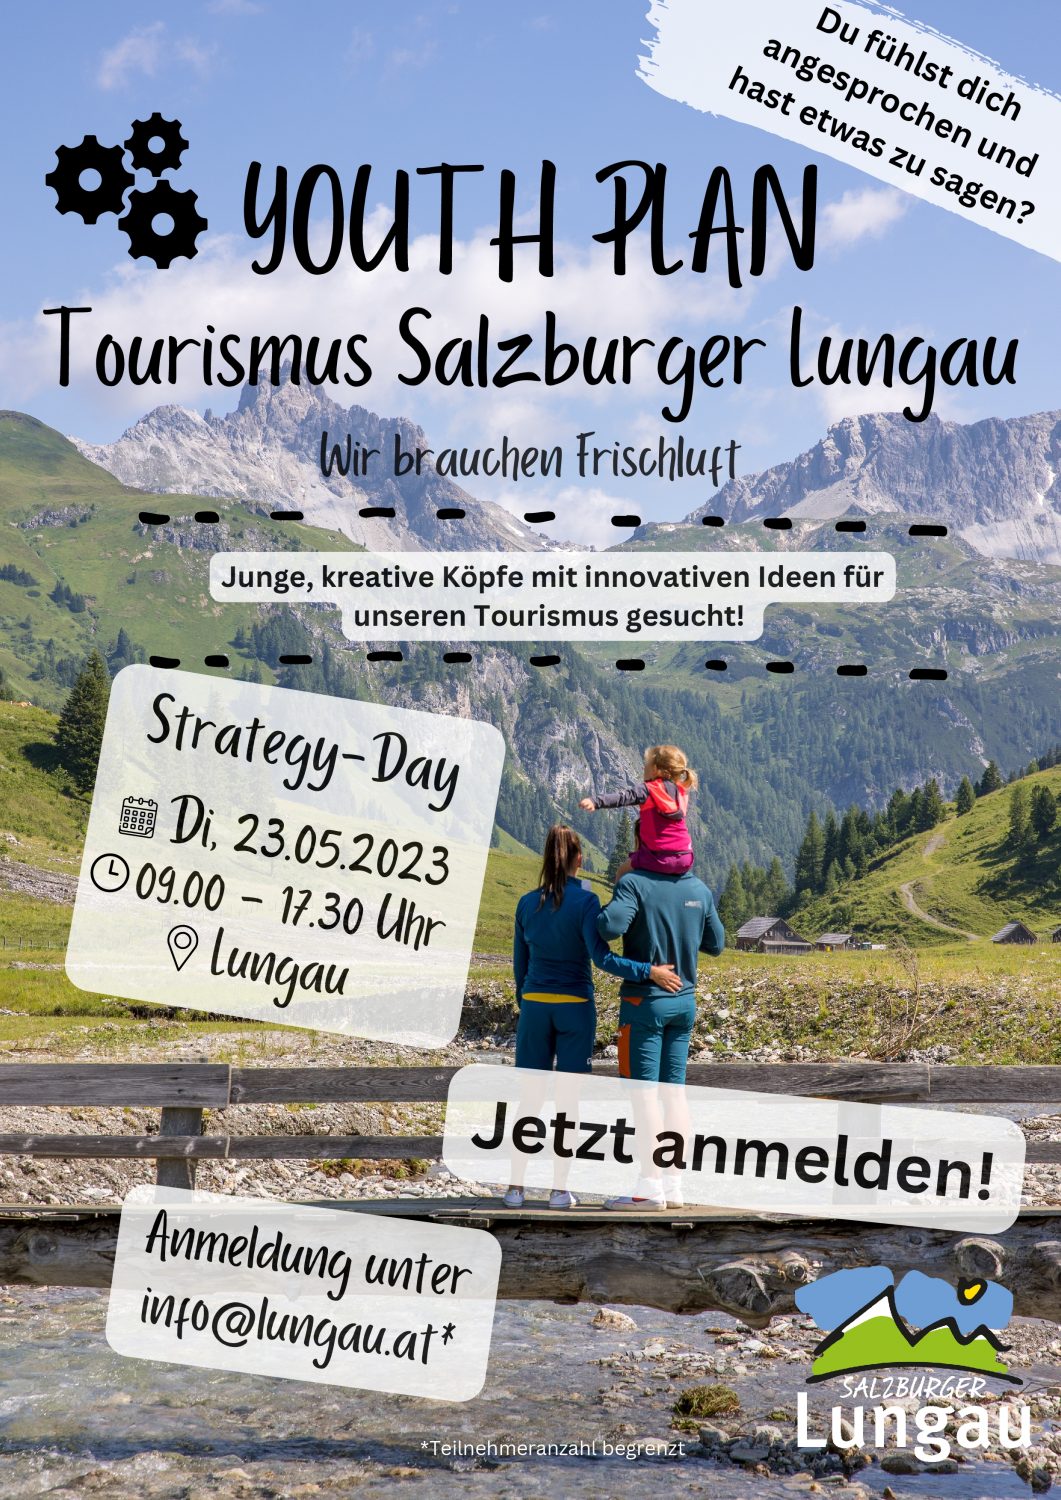 YOUTH PLAN - Tourismus Salzburger Lungau